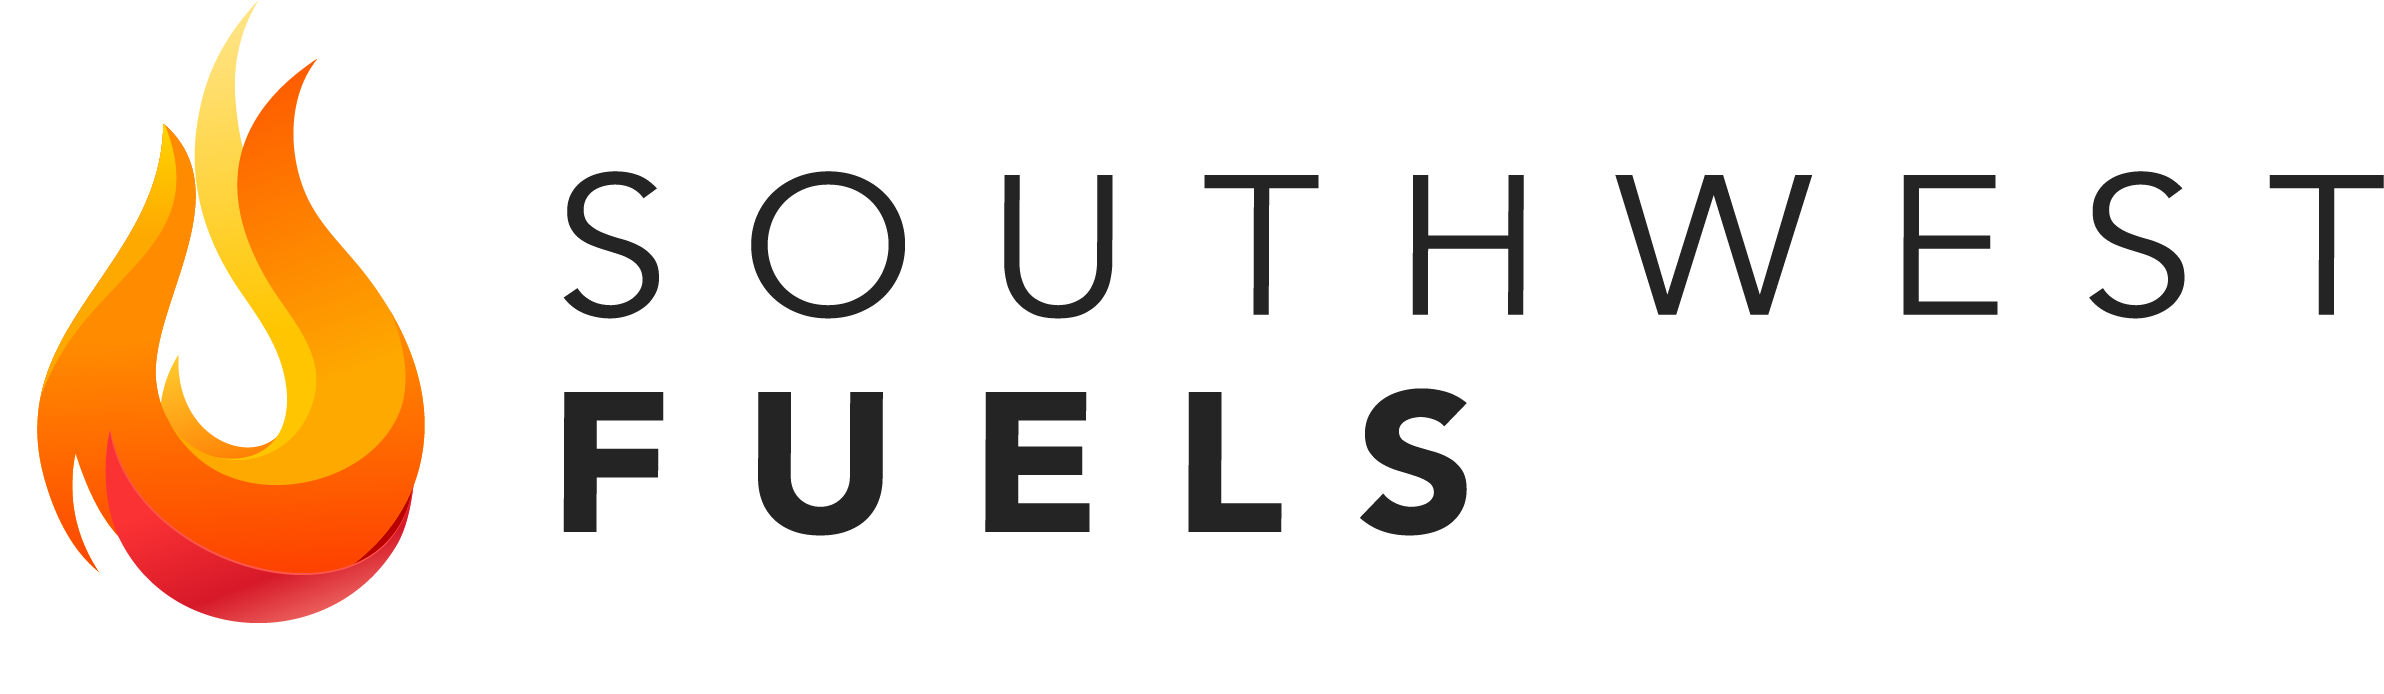 South West Fuels Ltd